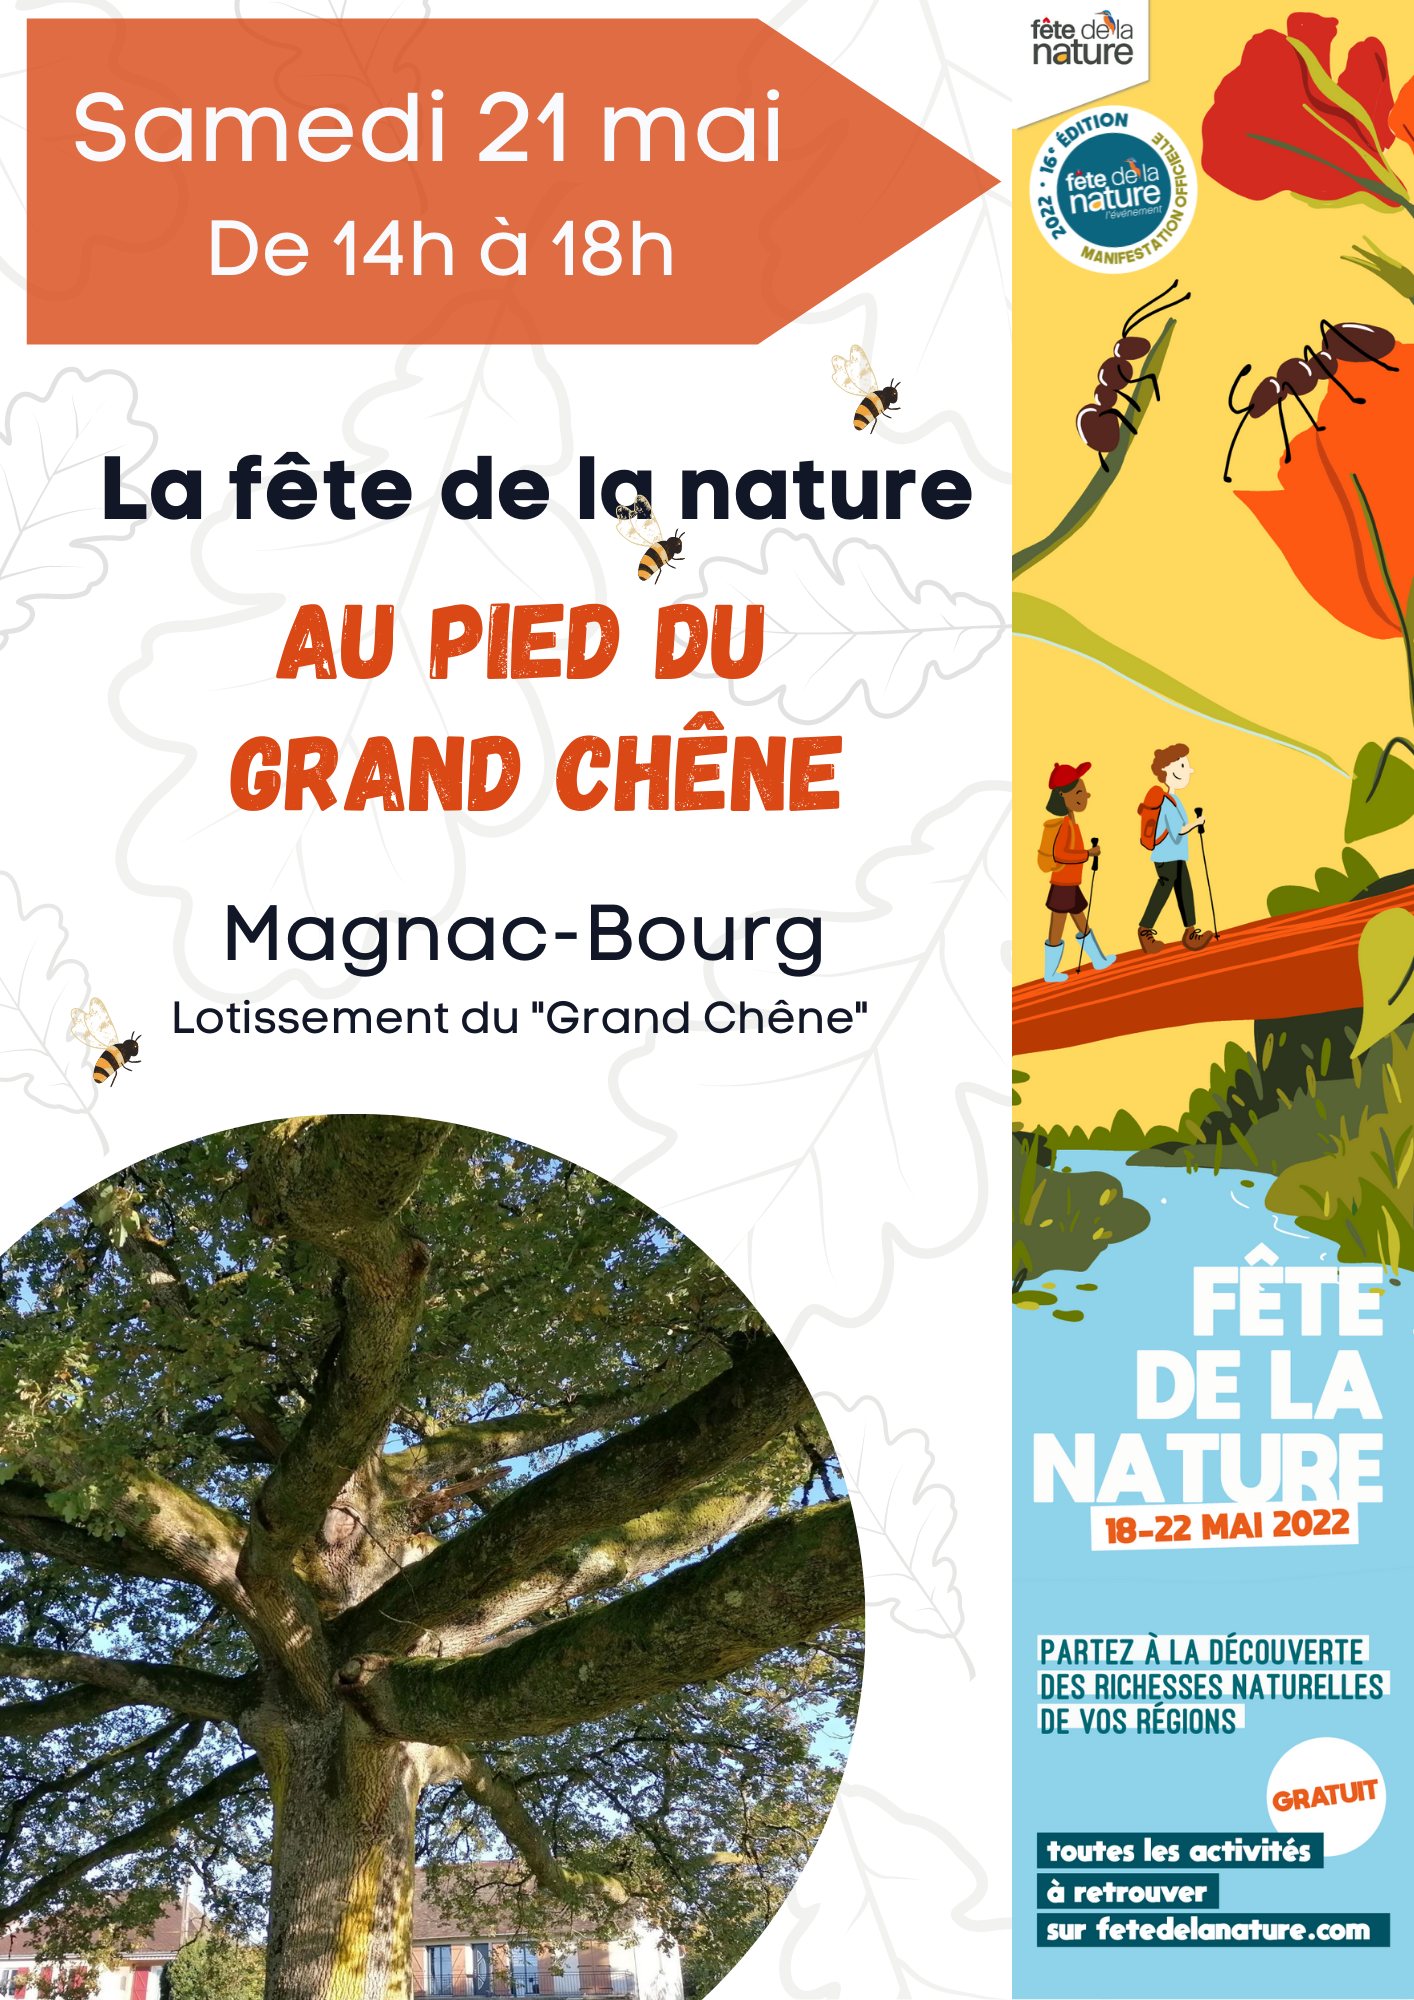 Kaolin partenaire de la [Fête de la Nature] de Magnac-Bourg (87)